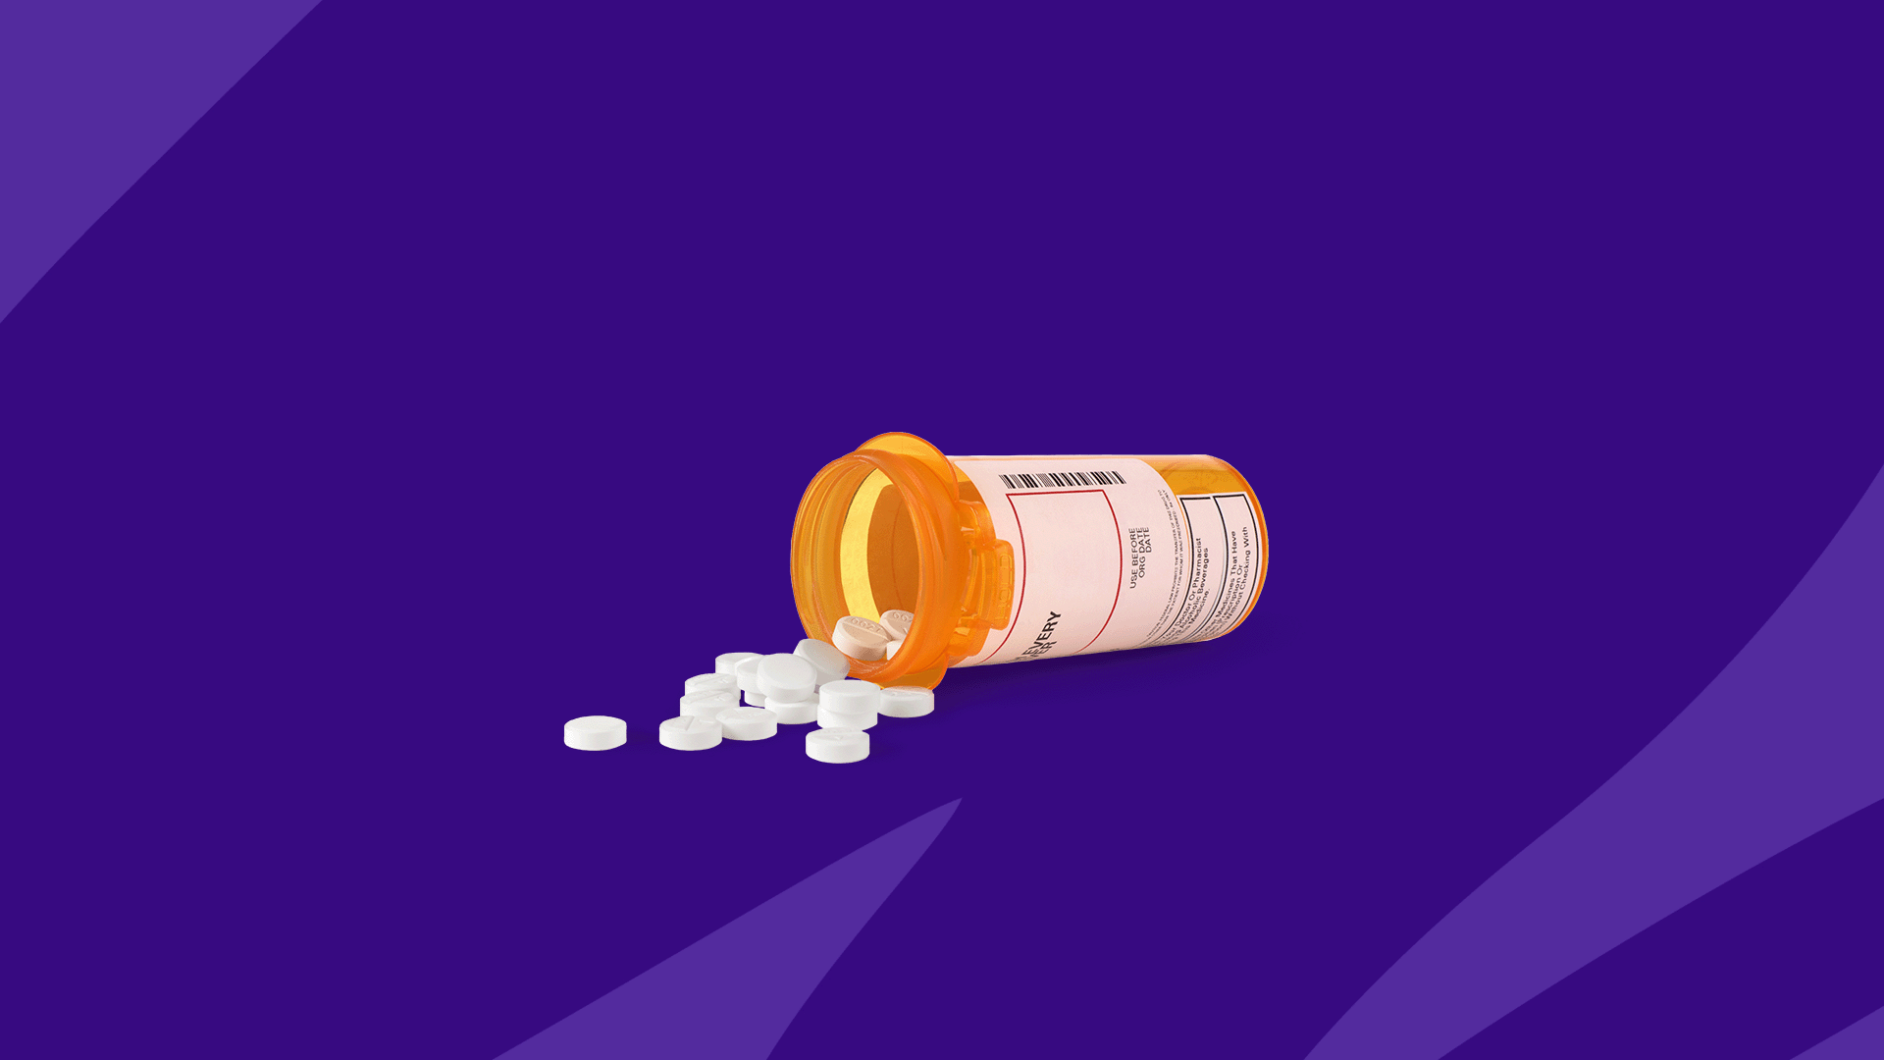 Rx spilled pills: Lipitor generic a